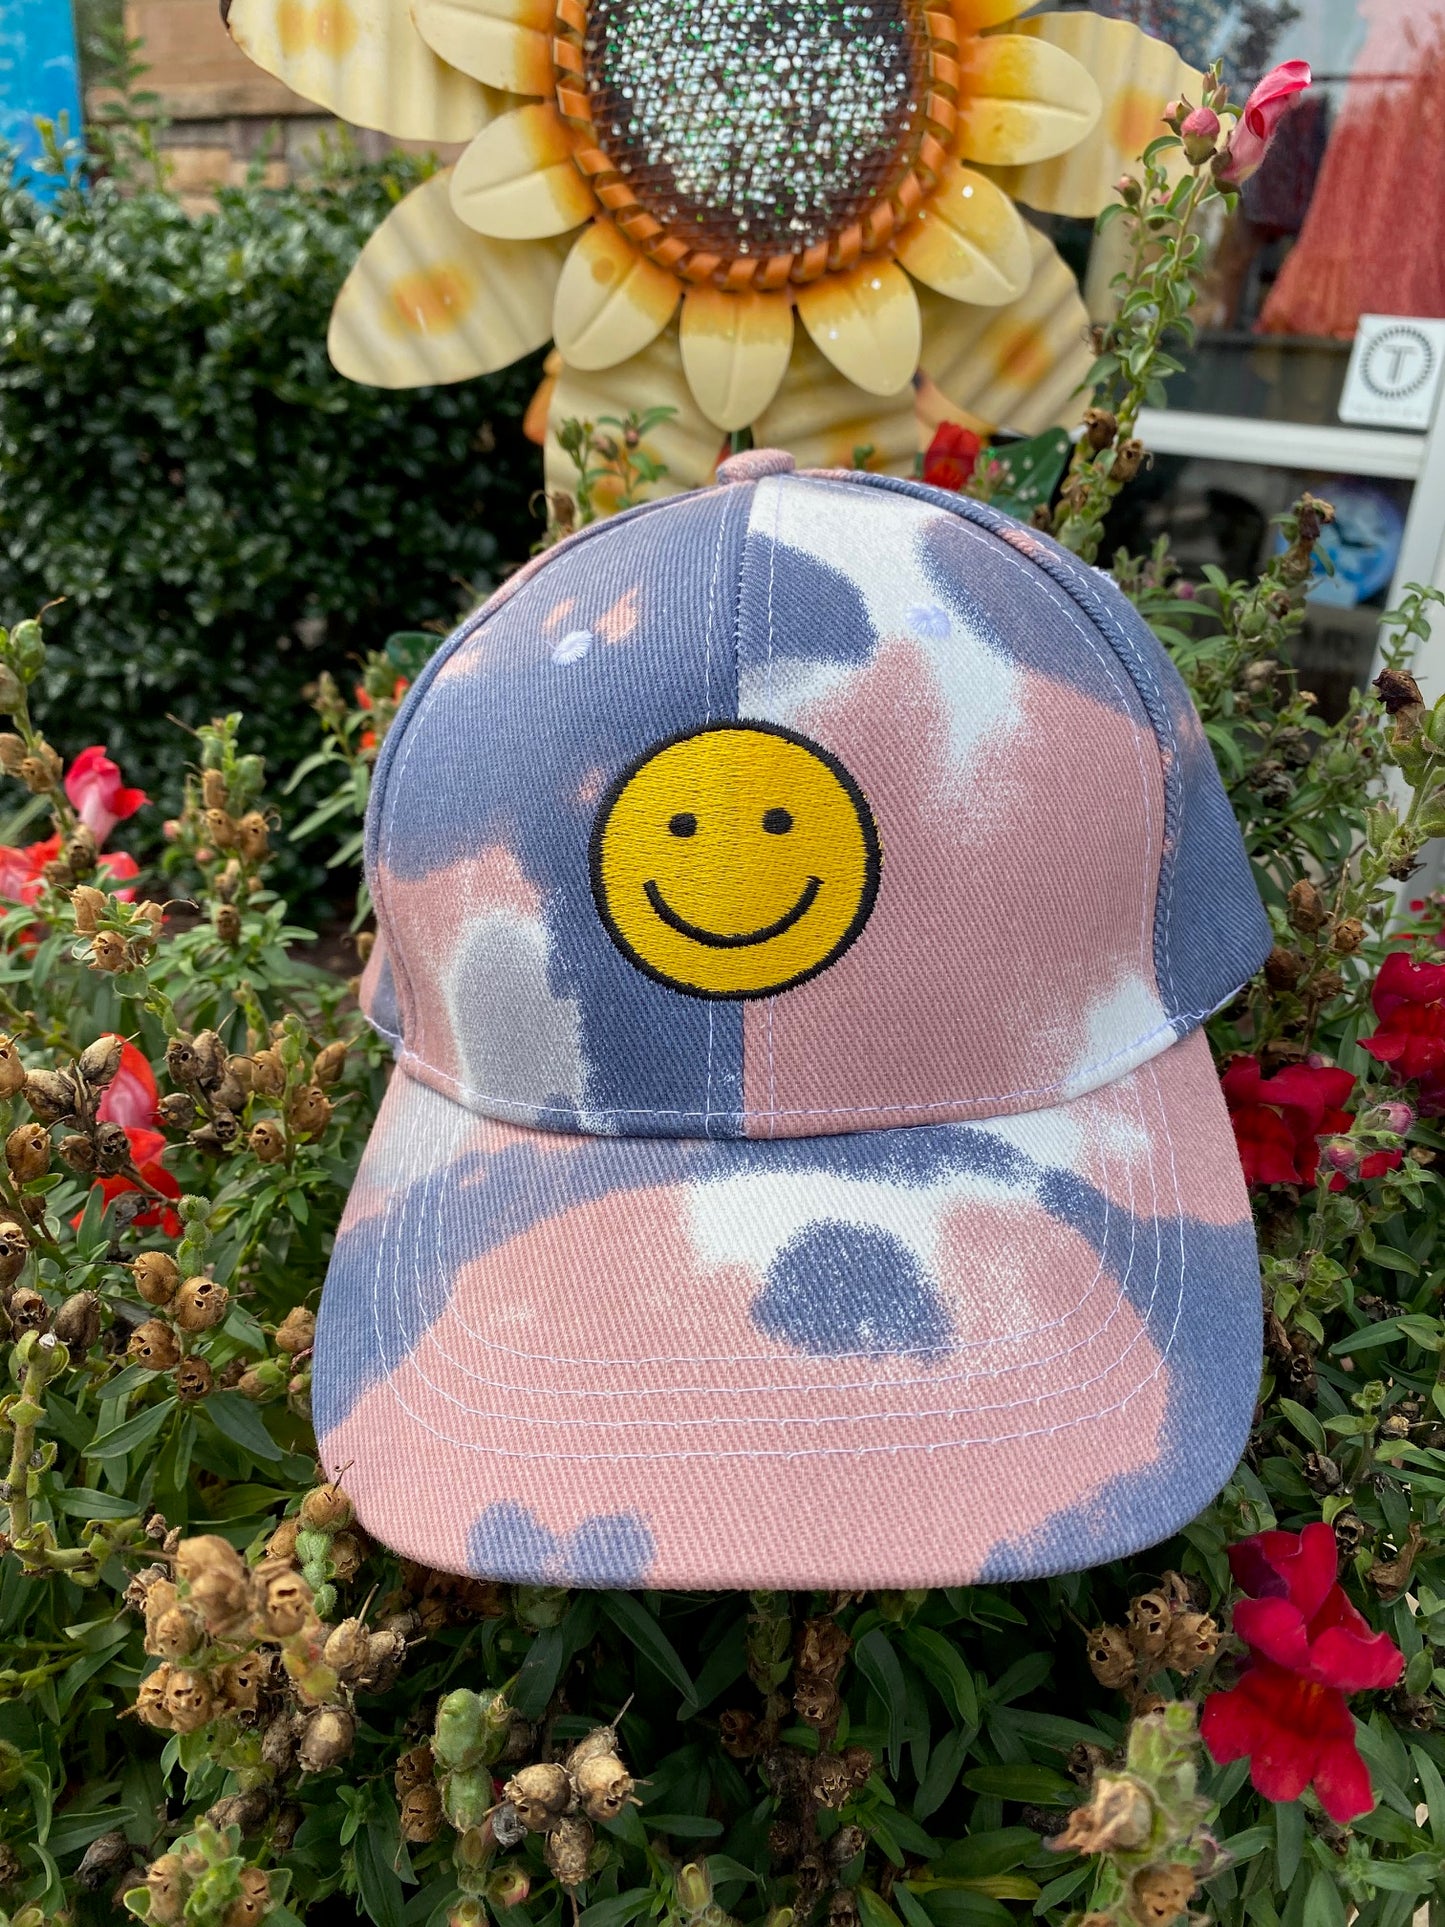 Smiley Ball Cap